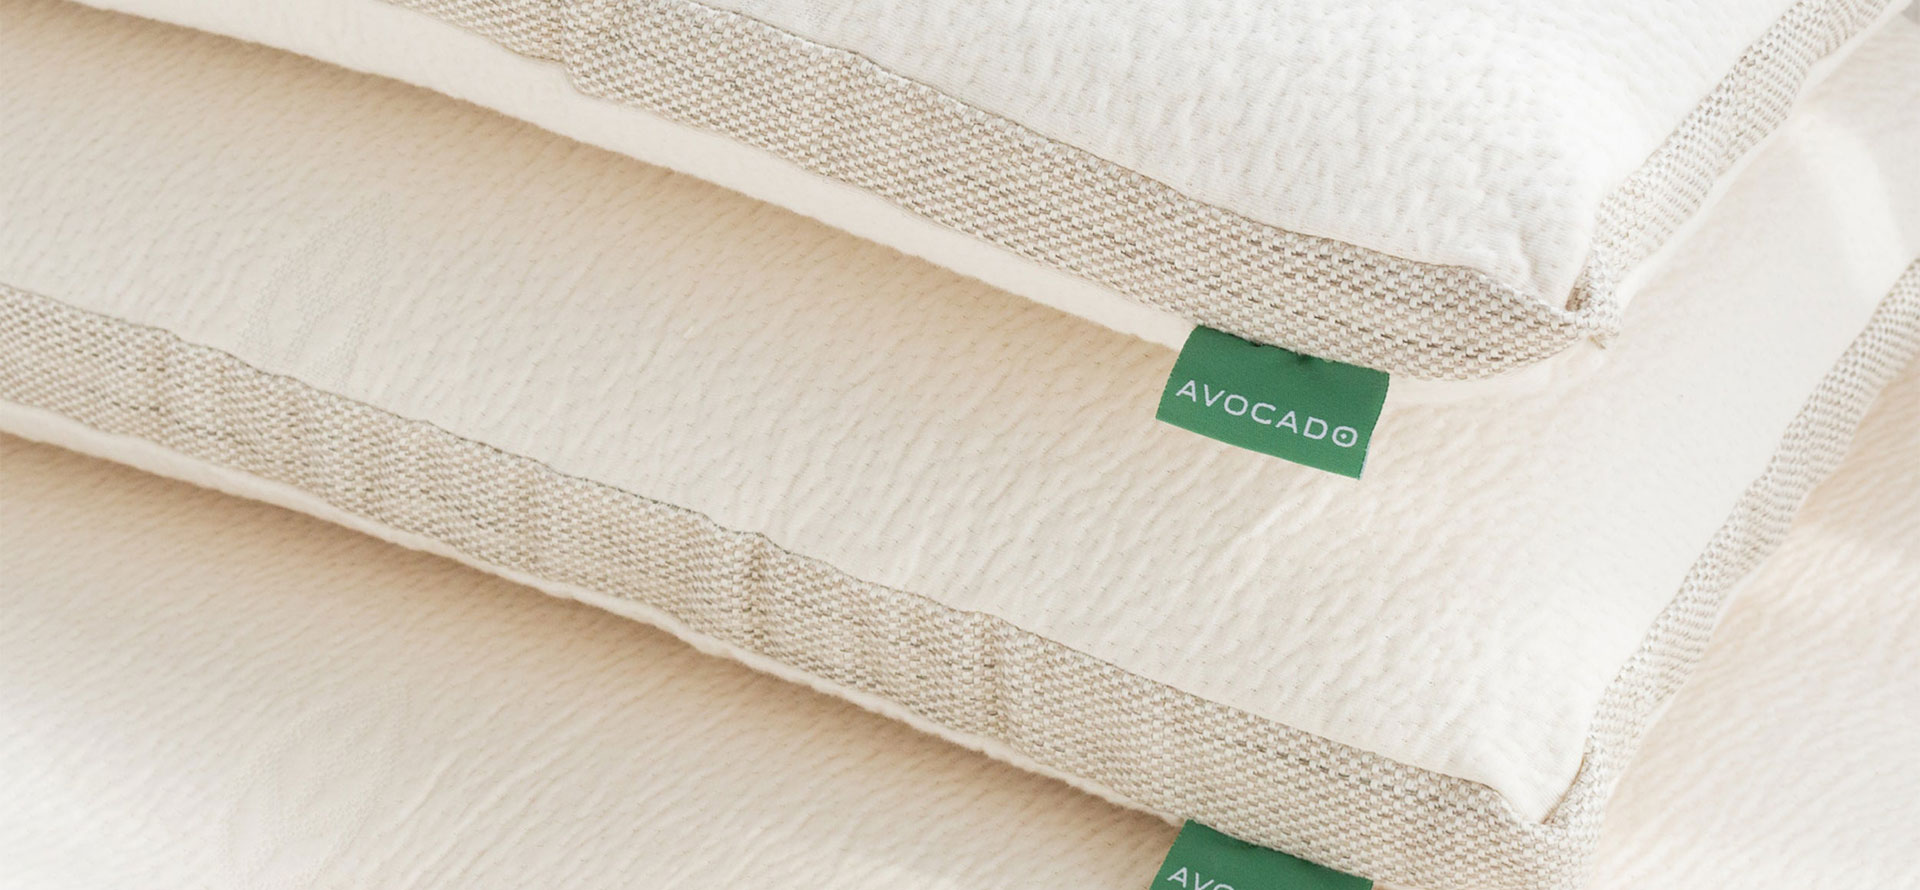 Avocado pillows on mattress.